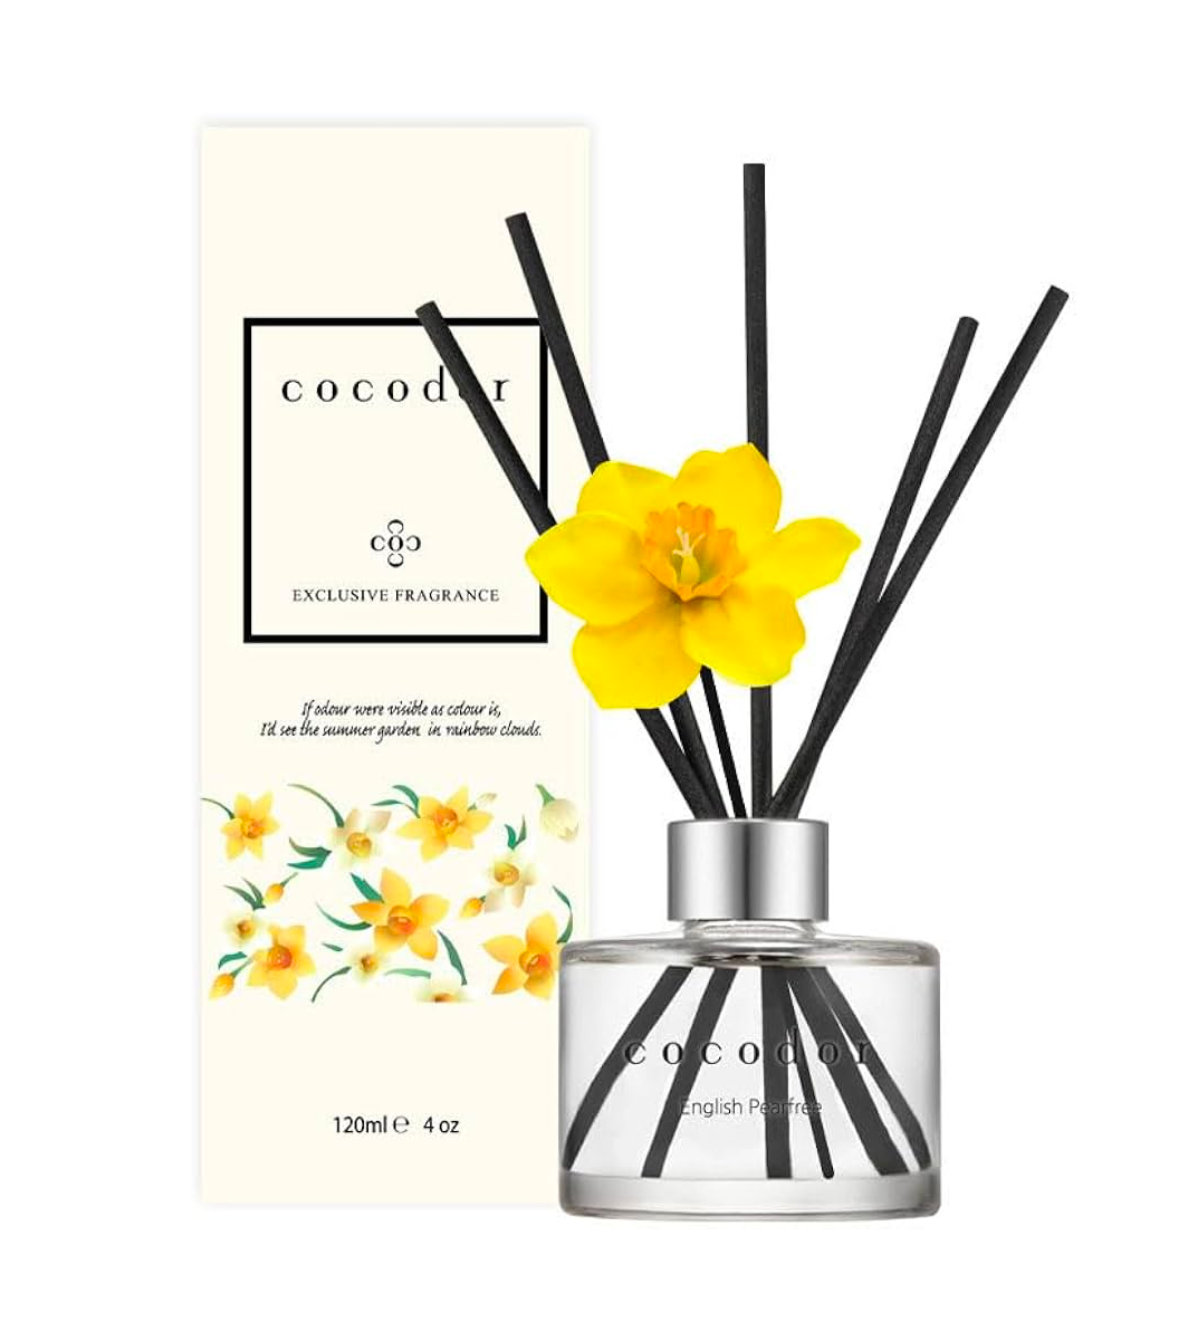 Daffodil Diffuser - English Pearfree Scent